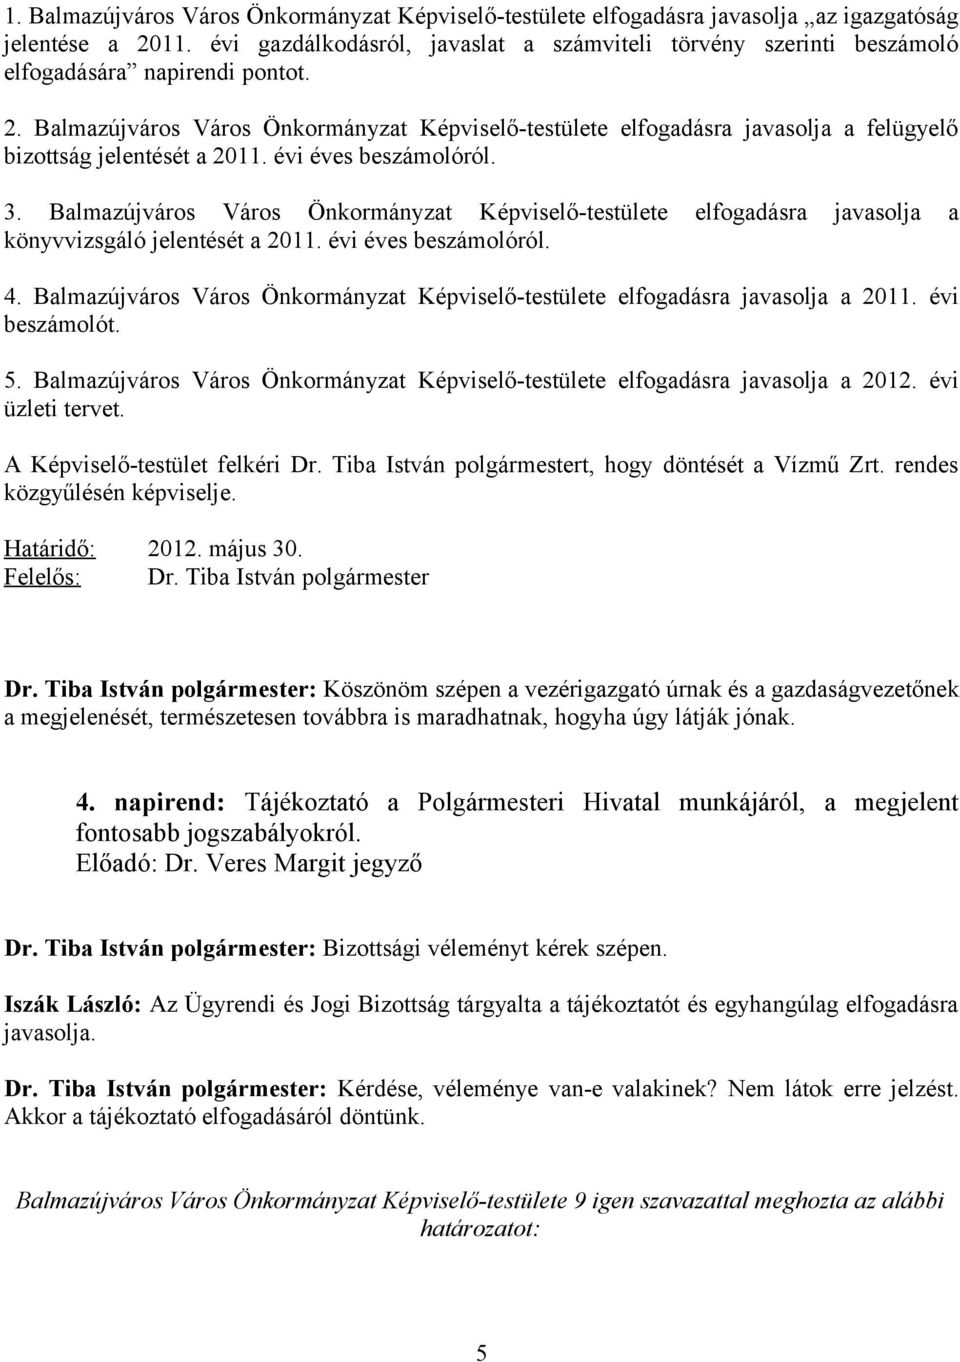 Balmazújváros Város Önkormányzat Képviselő-testülete elfogadásra javasolja a felügyelő bizottság jelentését a 2011. évi éves beszámolóról. 3.